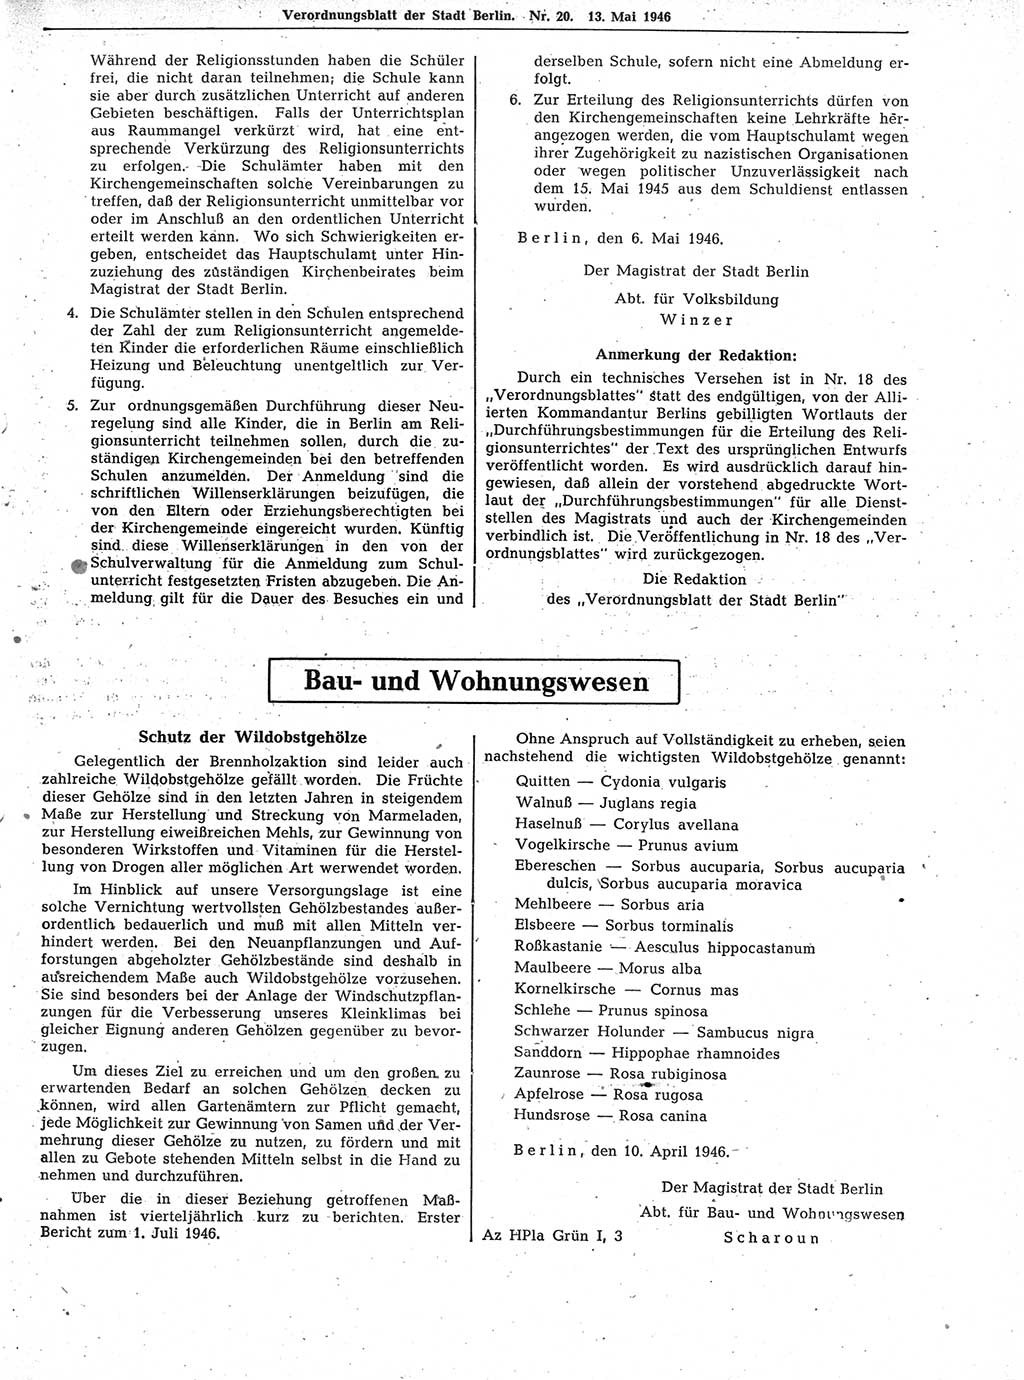 Verordnungsblatt (VOBl.) der Stadt Berlin, für Groß-Berlin 1946, Seite 155 (VOBl. Bln. 1946, S. 155)